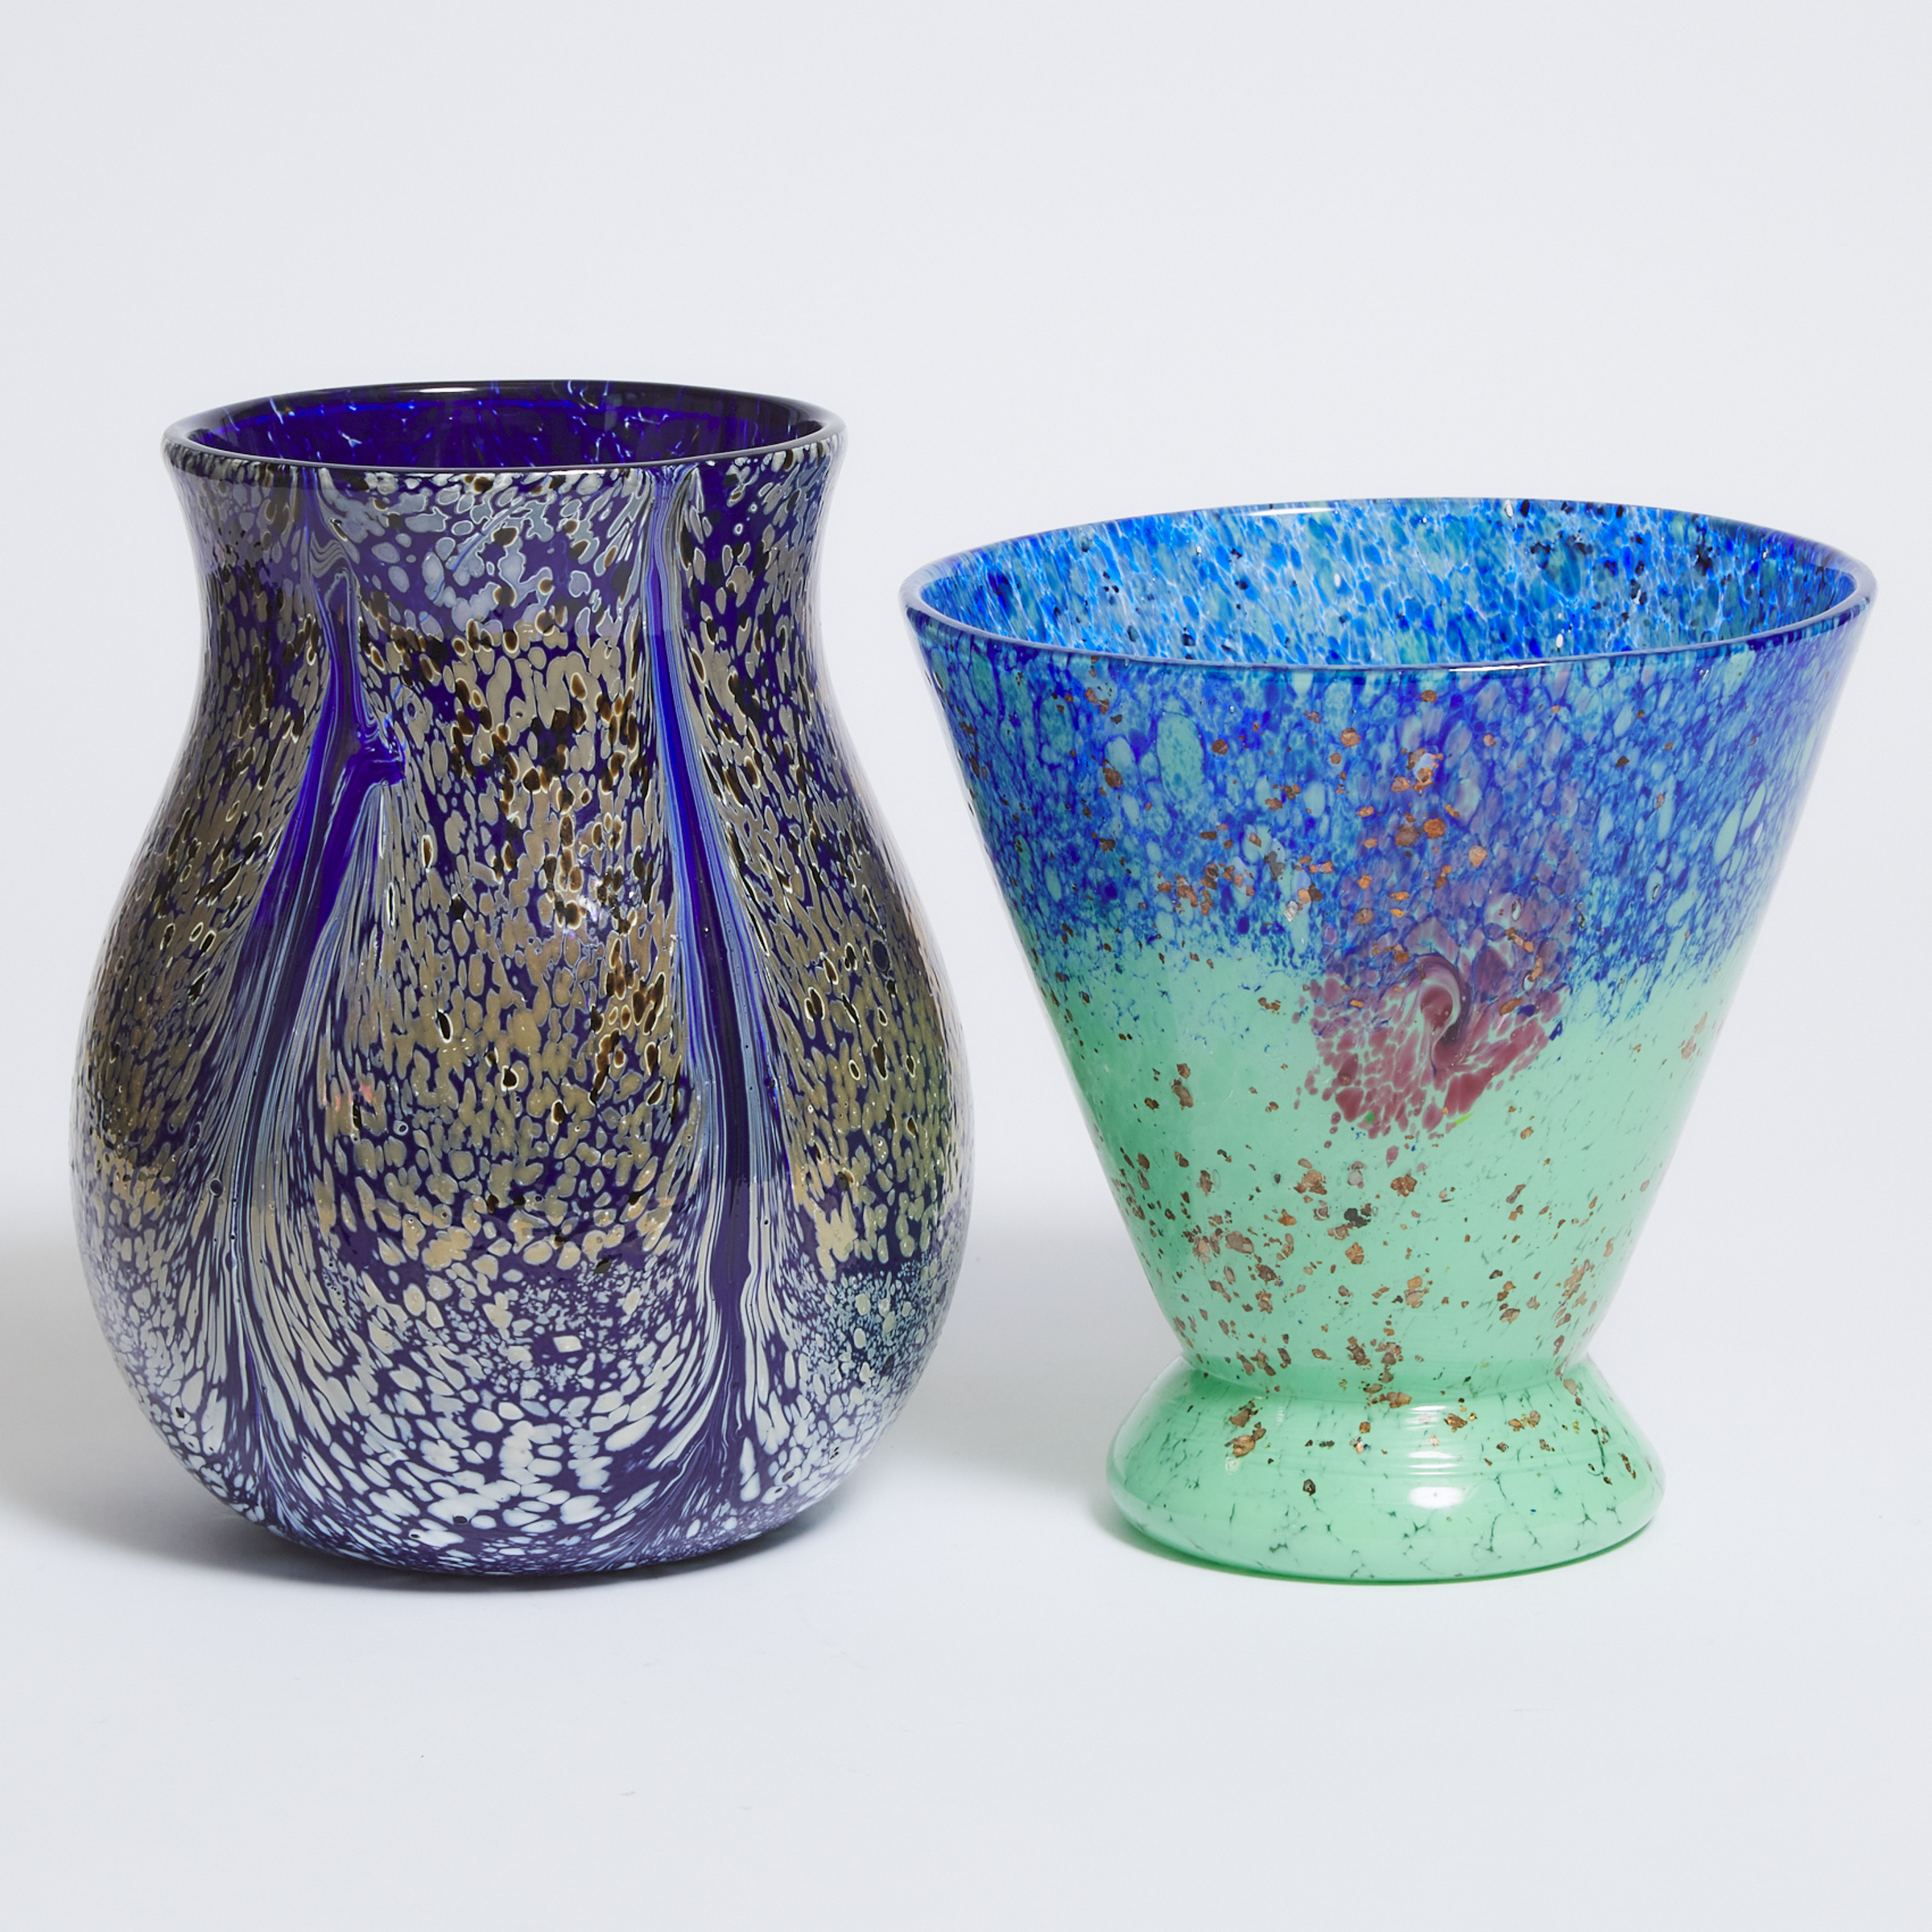 Two Mottled Coloured Glass Vases, 20th century